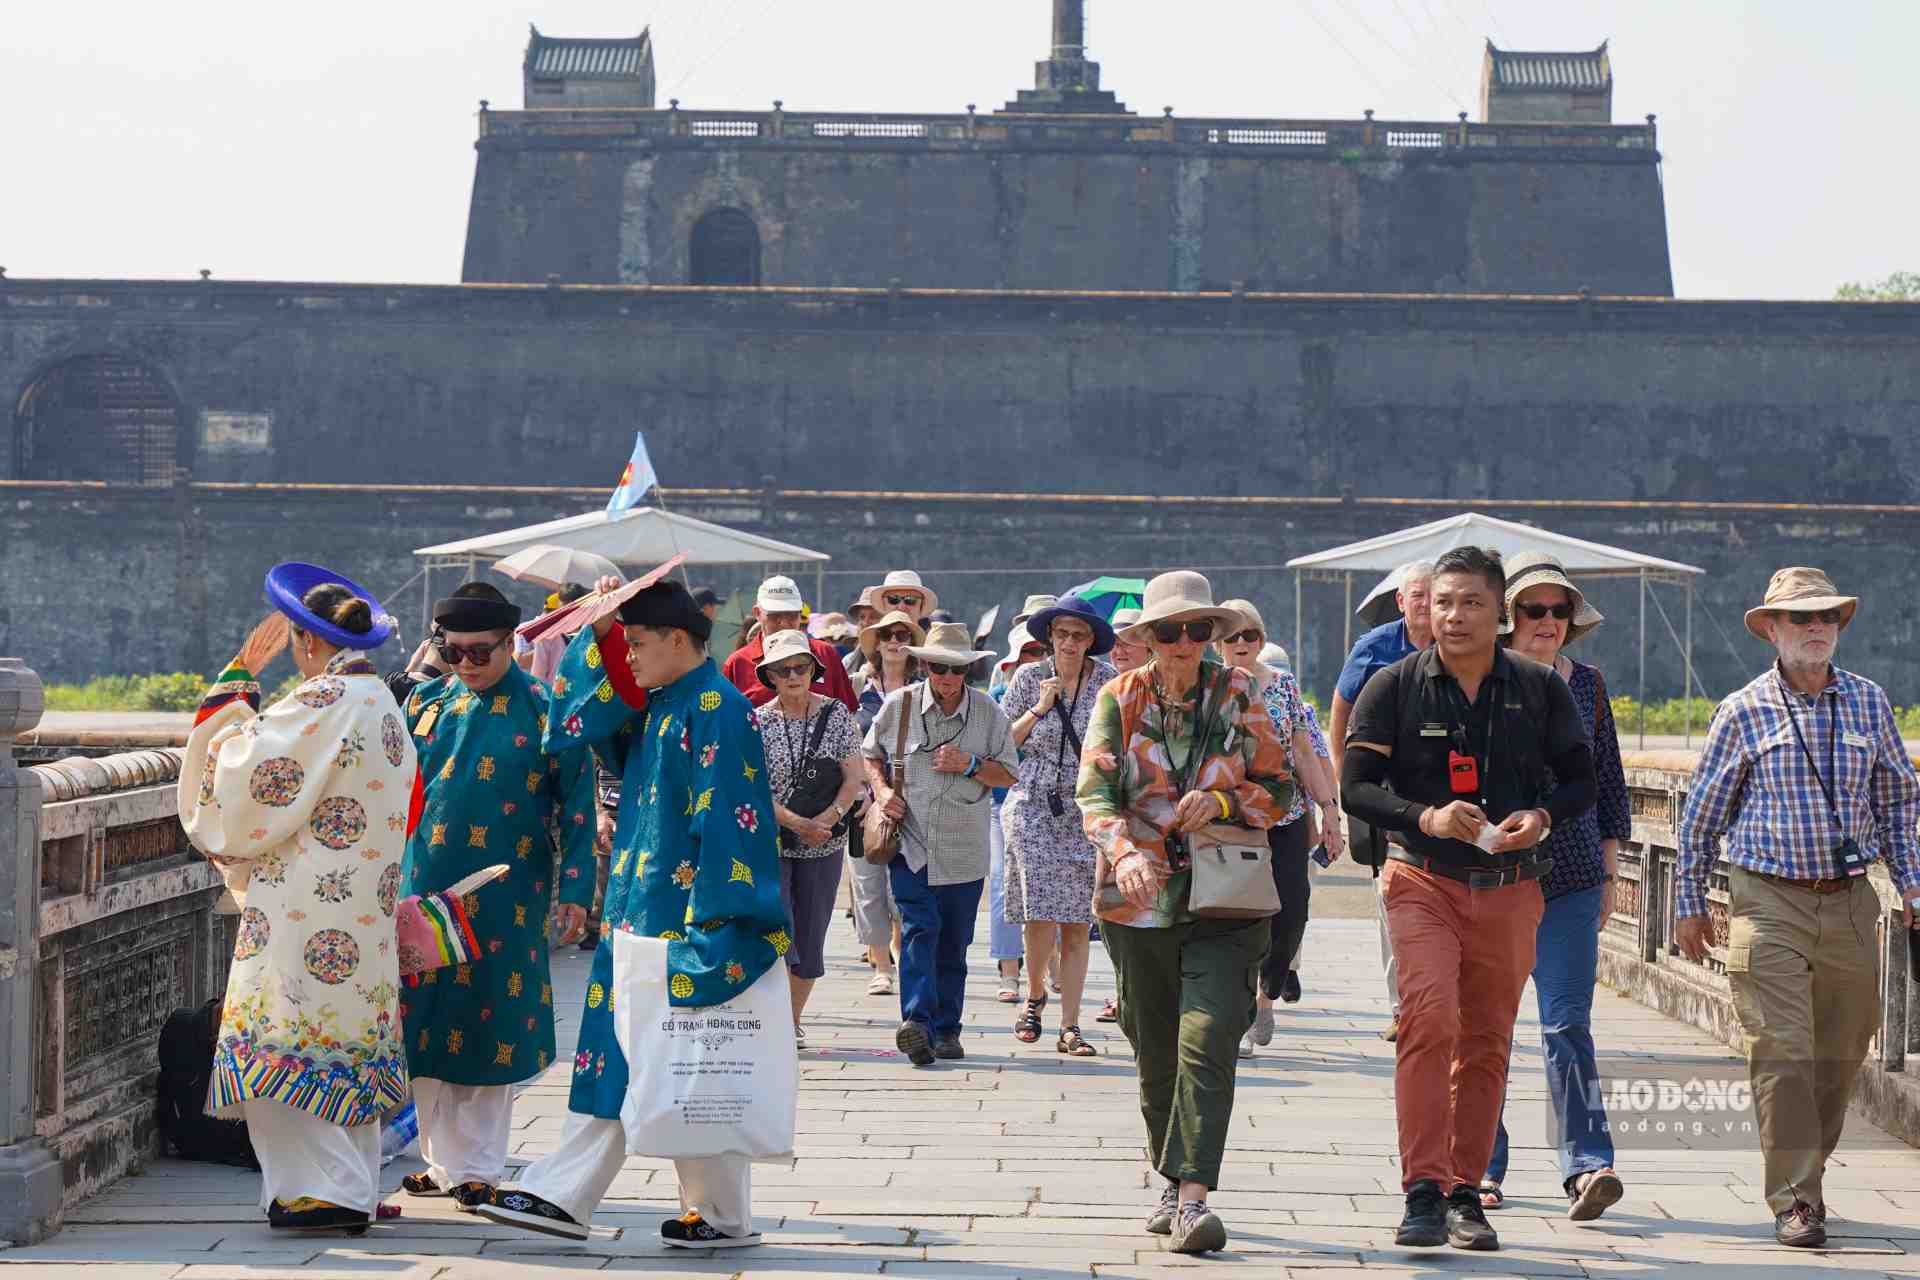 Theo dự kiến, lượng khách đến Huế tham quan trong dịp lễ (từ ngày 27.4 đến hết 1.5) sẽ khoảng 65.000 lượt (khách quốc tế ước khoảng 17.000 lượt, khách nội địa ước khoảng 48.000 lượt). 